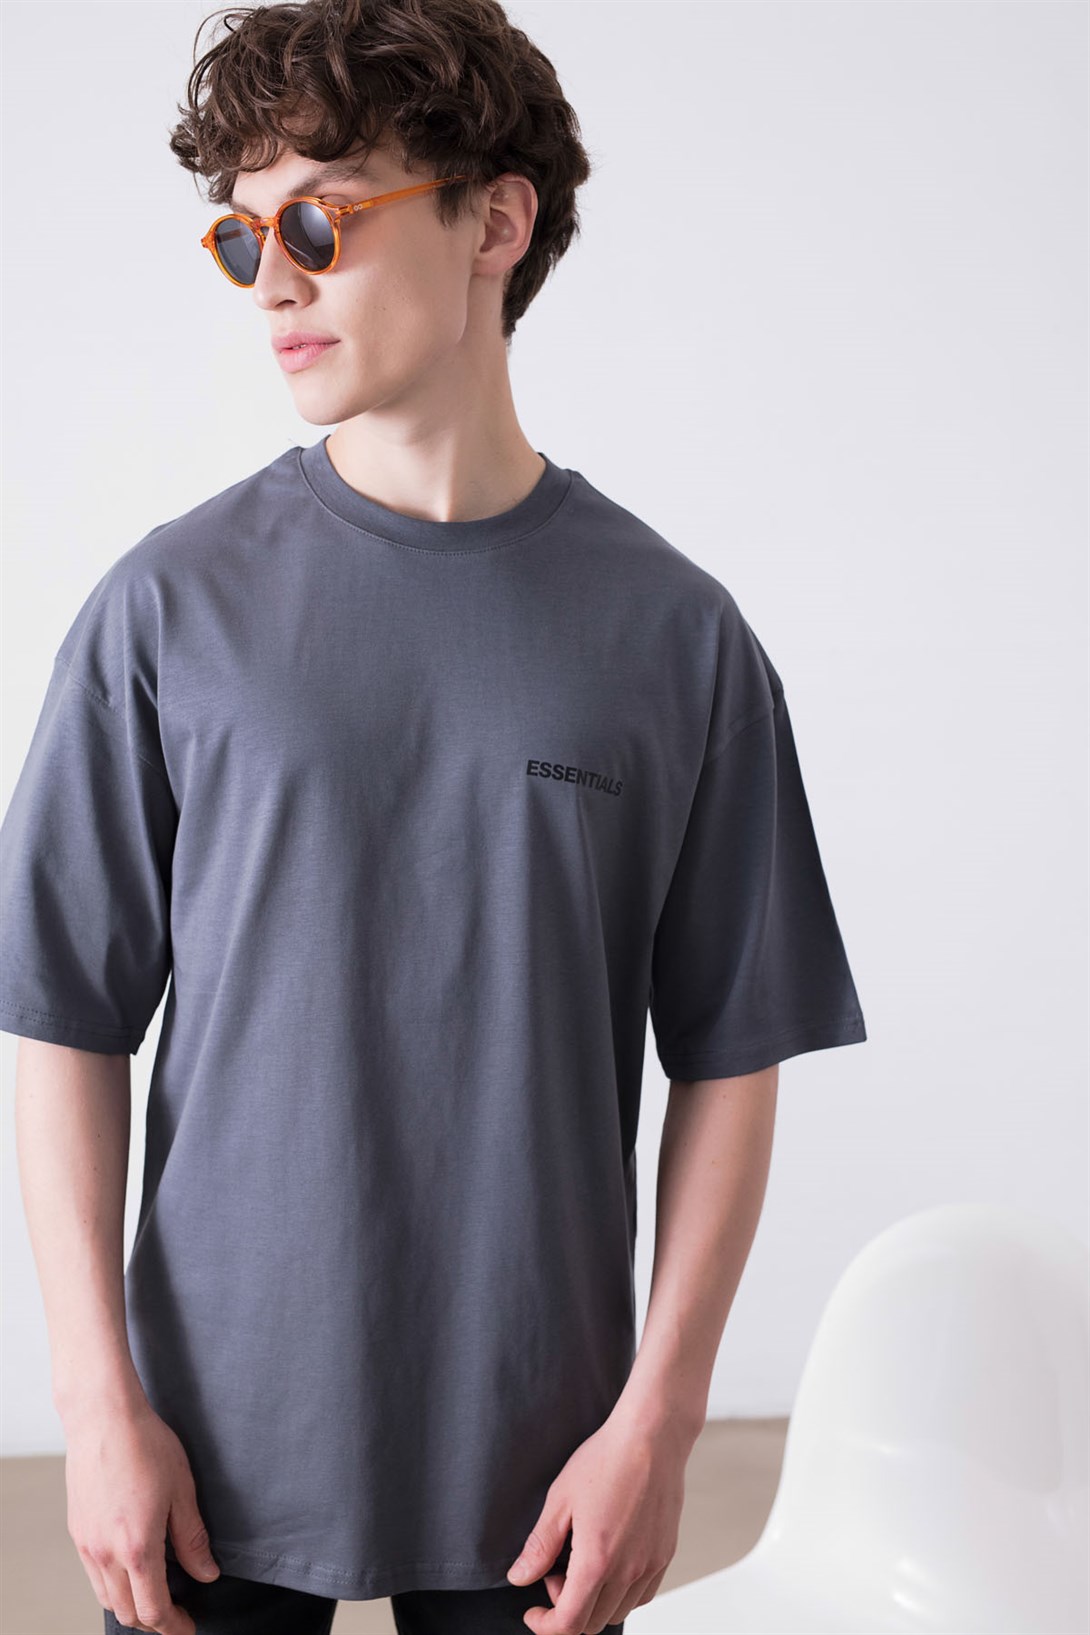 Trendiz Unisex Essentials 303 Antrasit Tshirt